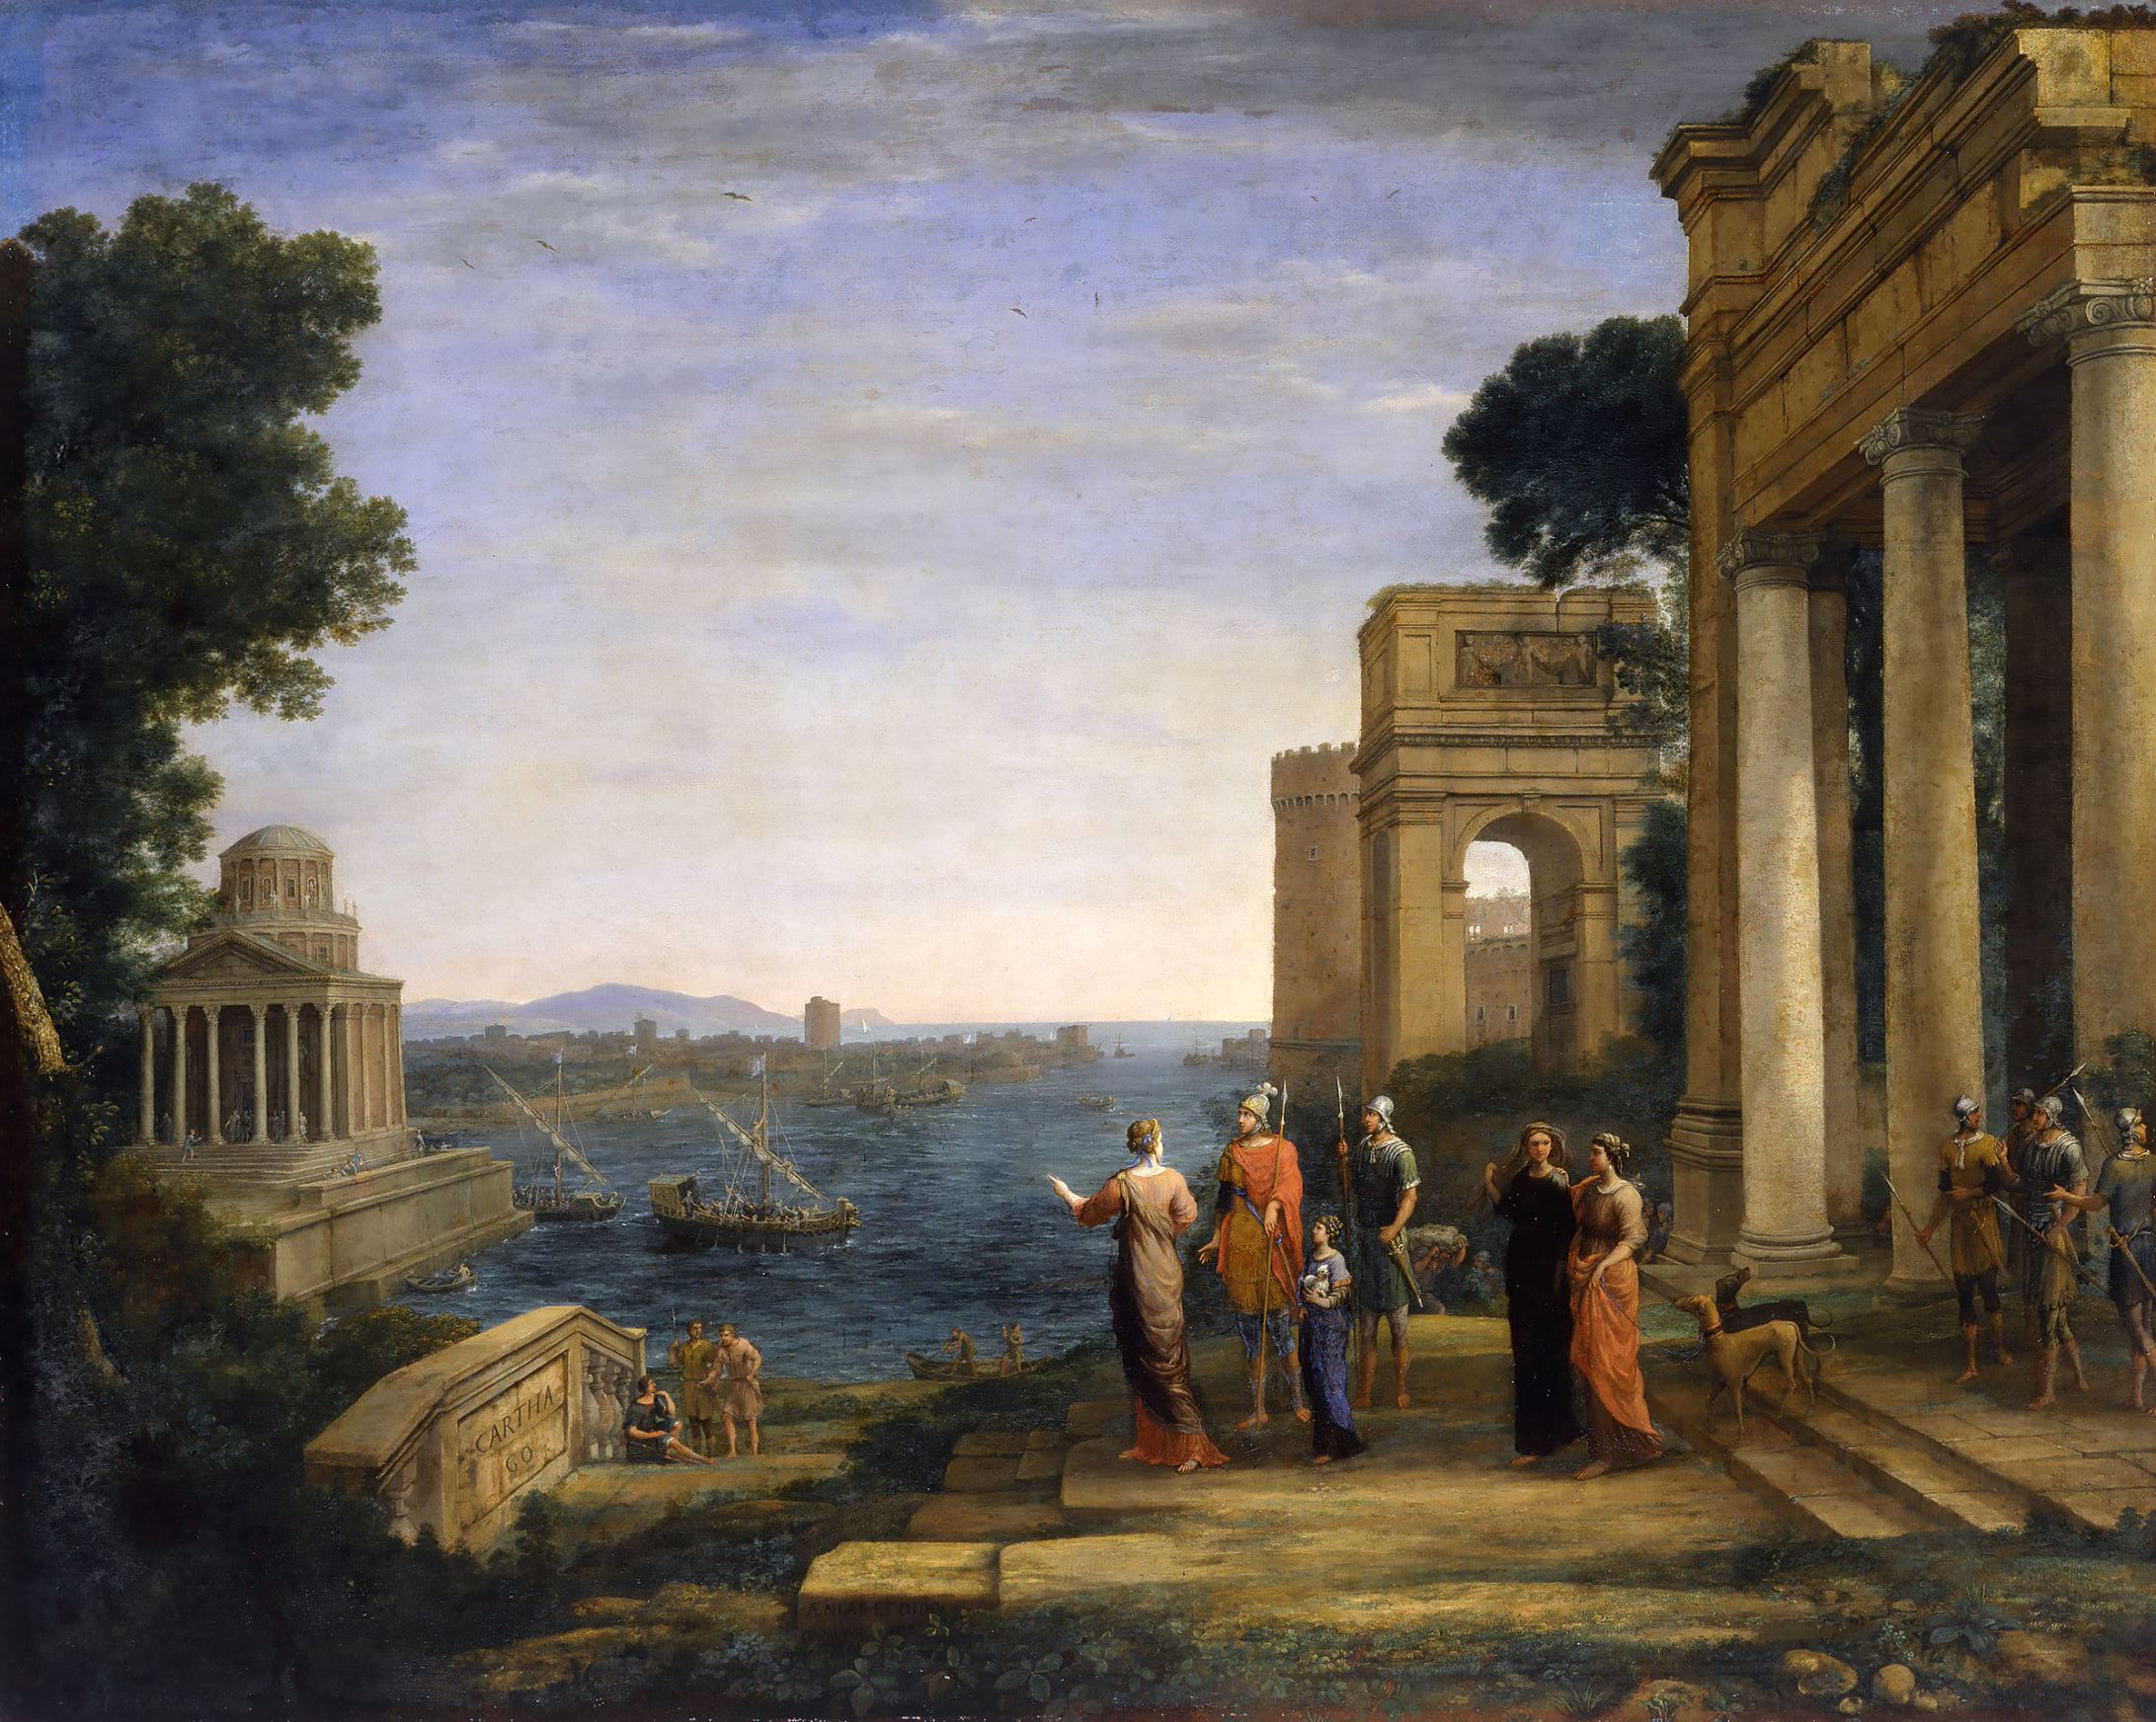 Claude Lorrain, Aenas och Dido i Karthago, 1675–1676. Olja på duk. Hamburger Kunsthalle. Elke Walford